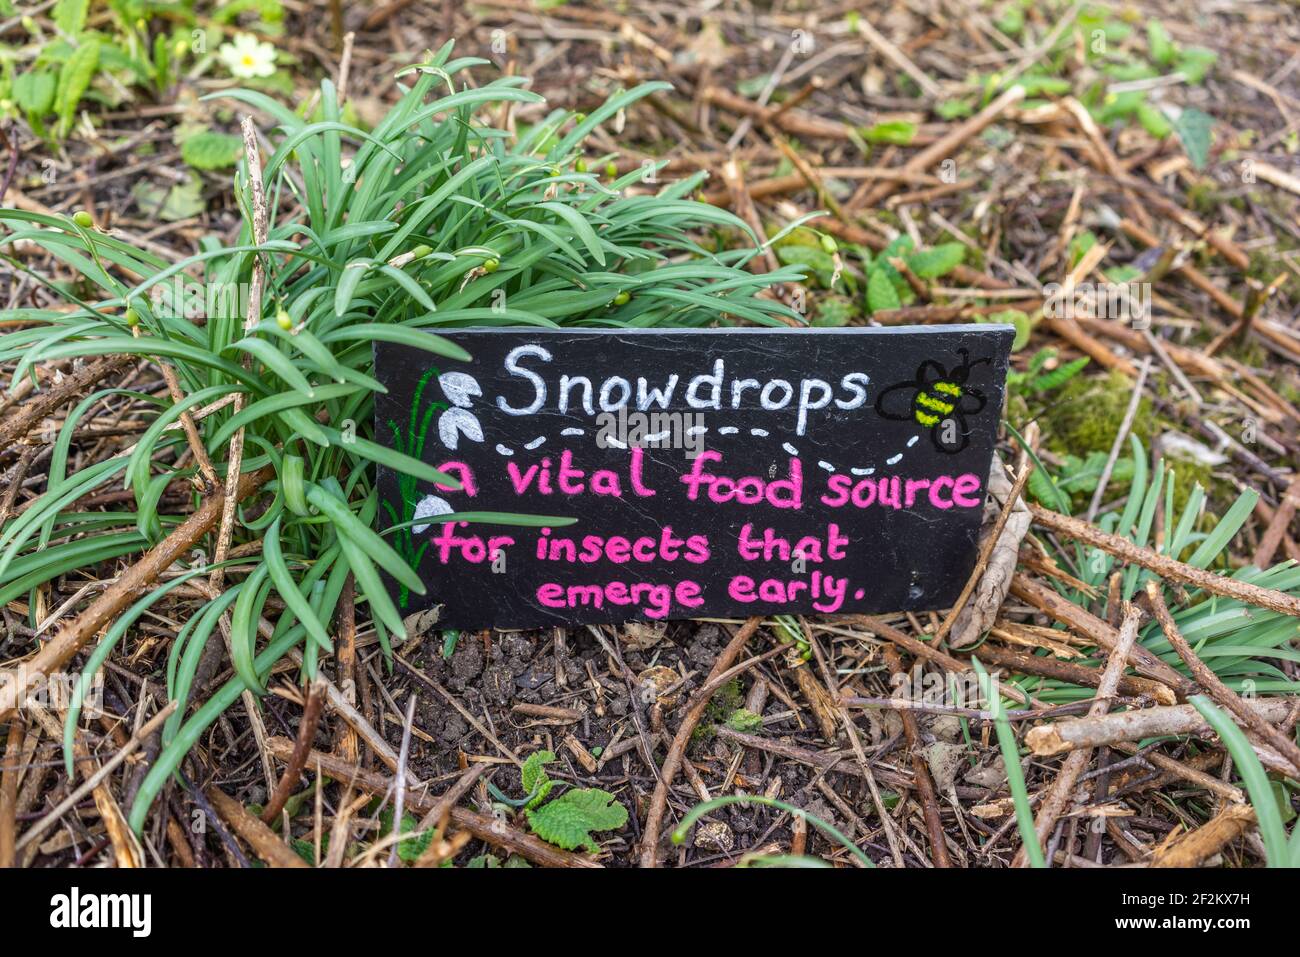 La lectura de la señal "Snodrops una fuente vital de alimentos para los insectos que emergen temprano" al lado de las gotas de nieve en un jardín, la conservación de la naturaleza, en Southampton, Reino Unido Foto de stock